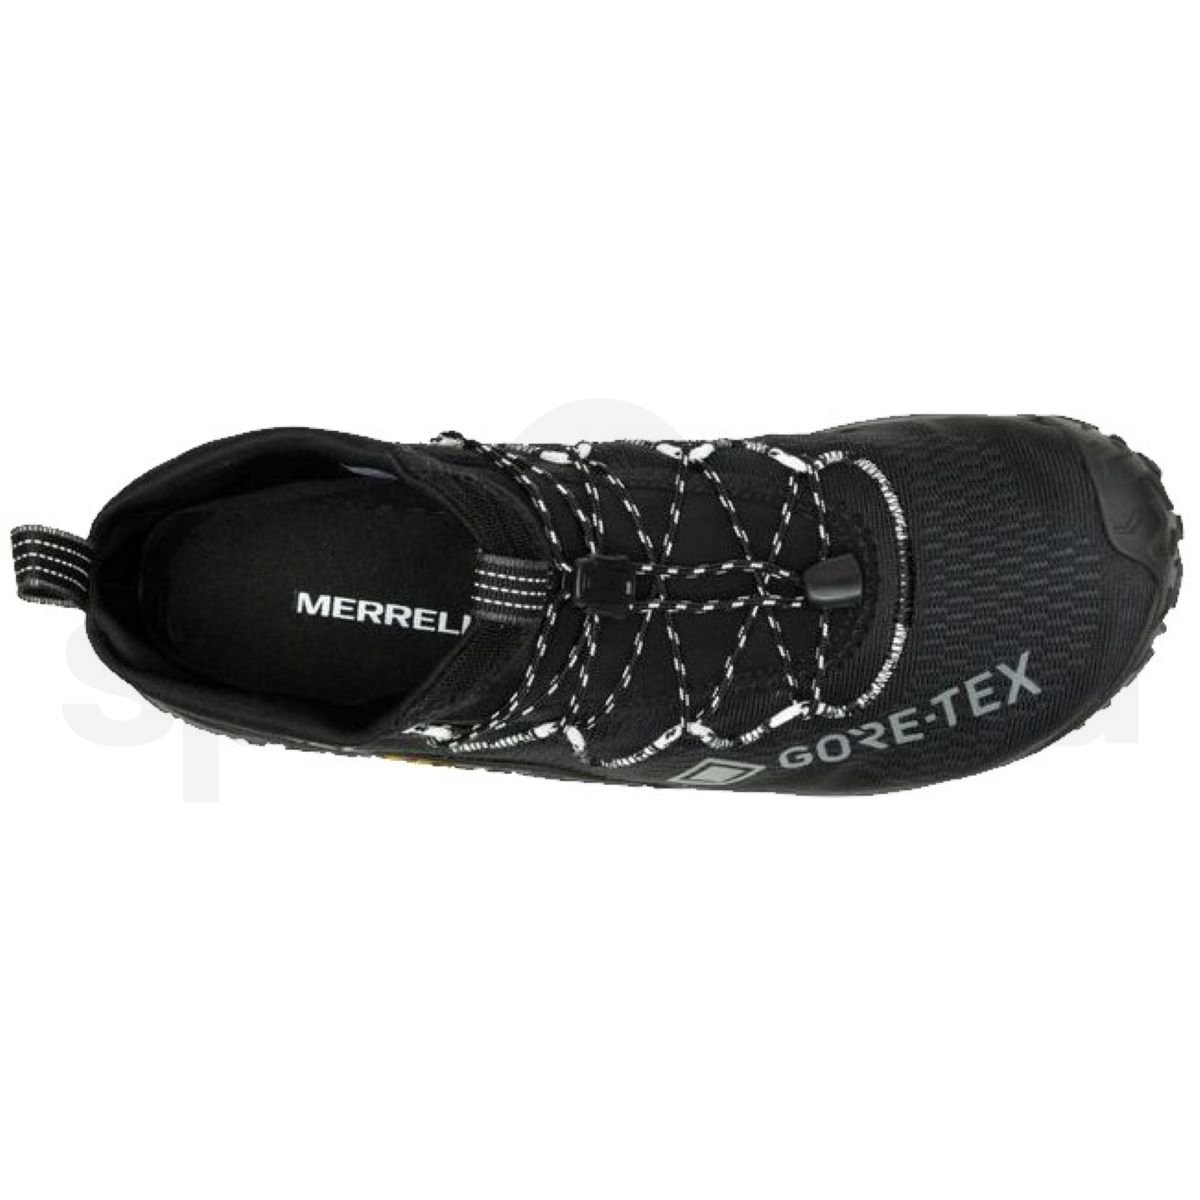 Obuv Merrell Trail Glove 7 GTX M - černá